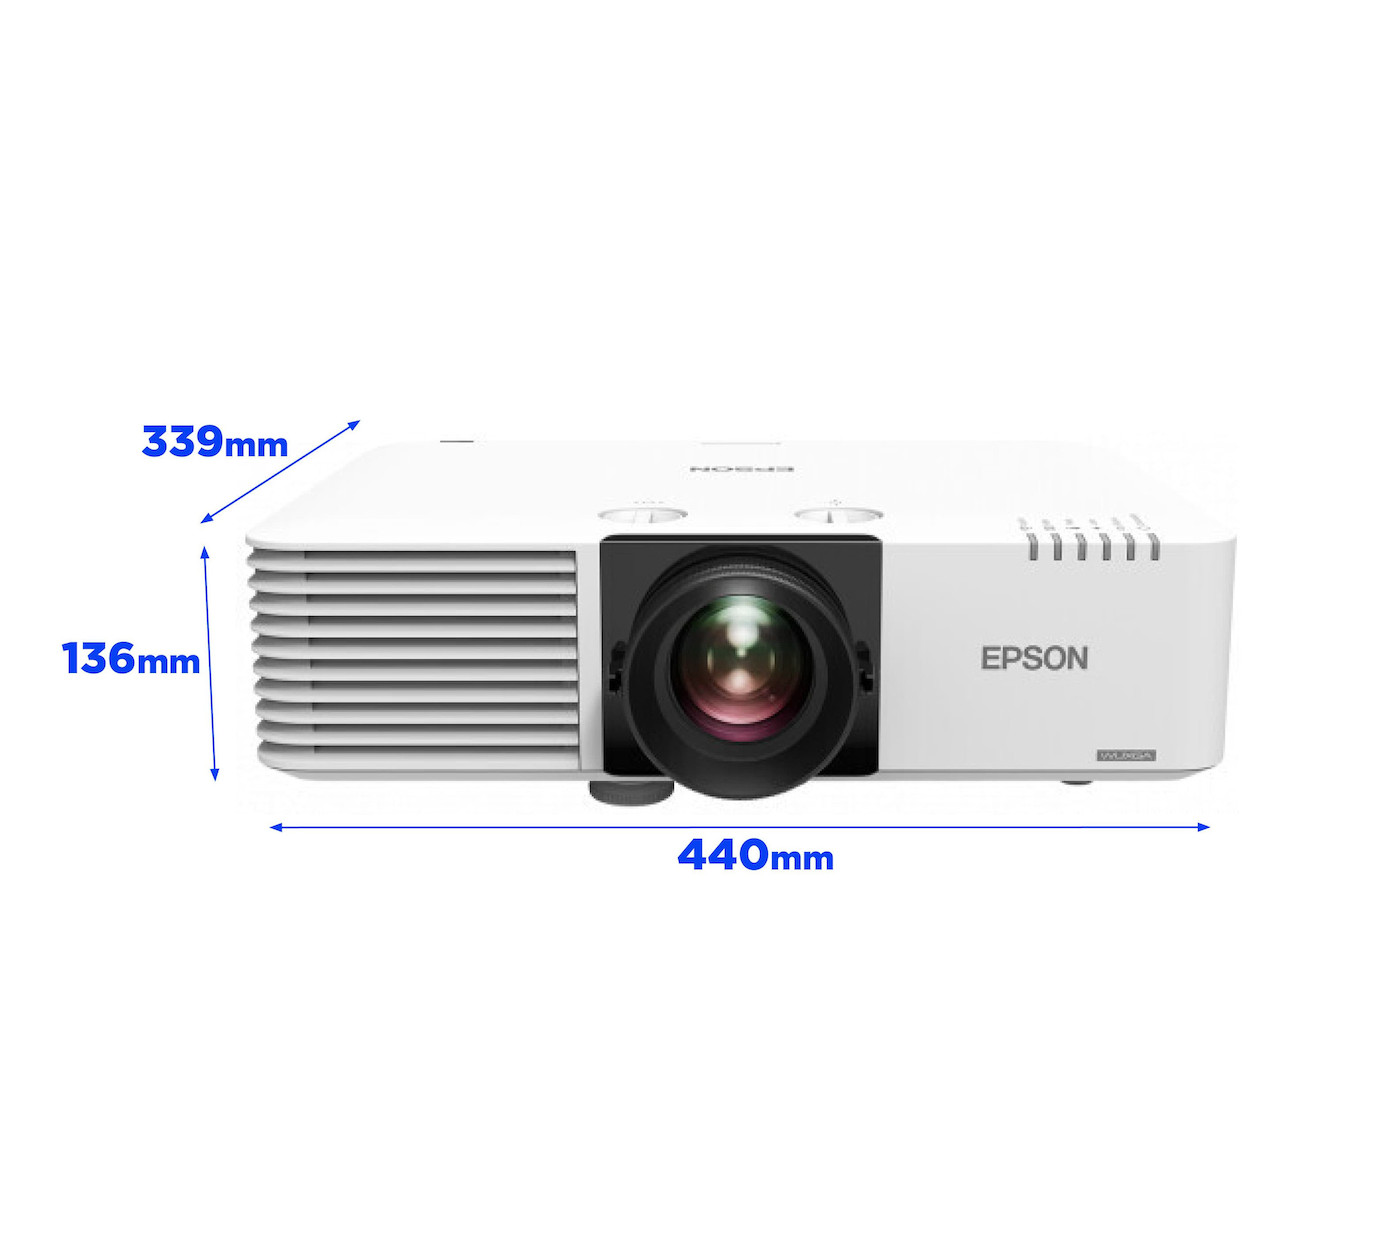 Vorschau: Epson EB-L530U Laserprojektor mit WUXGA-Full-HD und 5200 Lumen - Demo